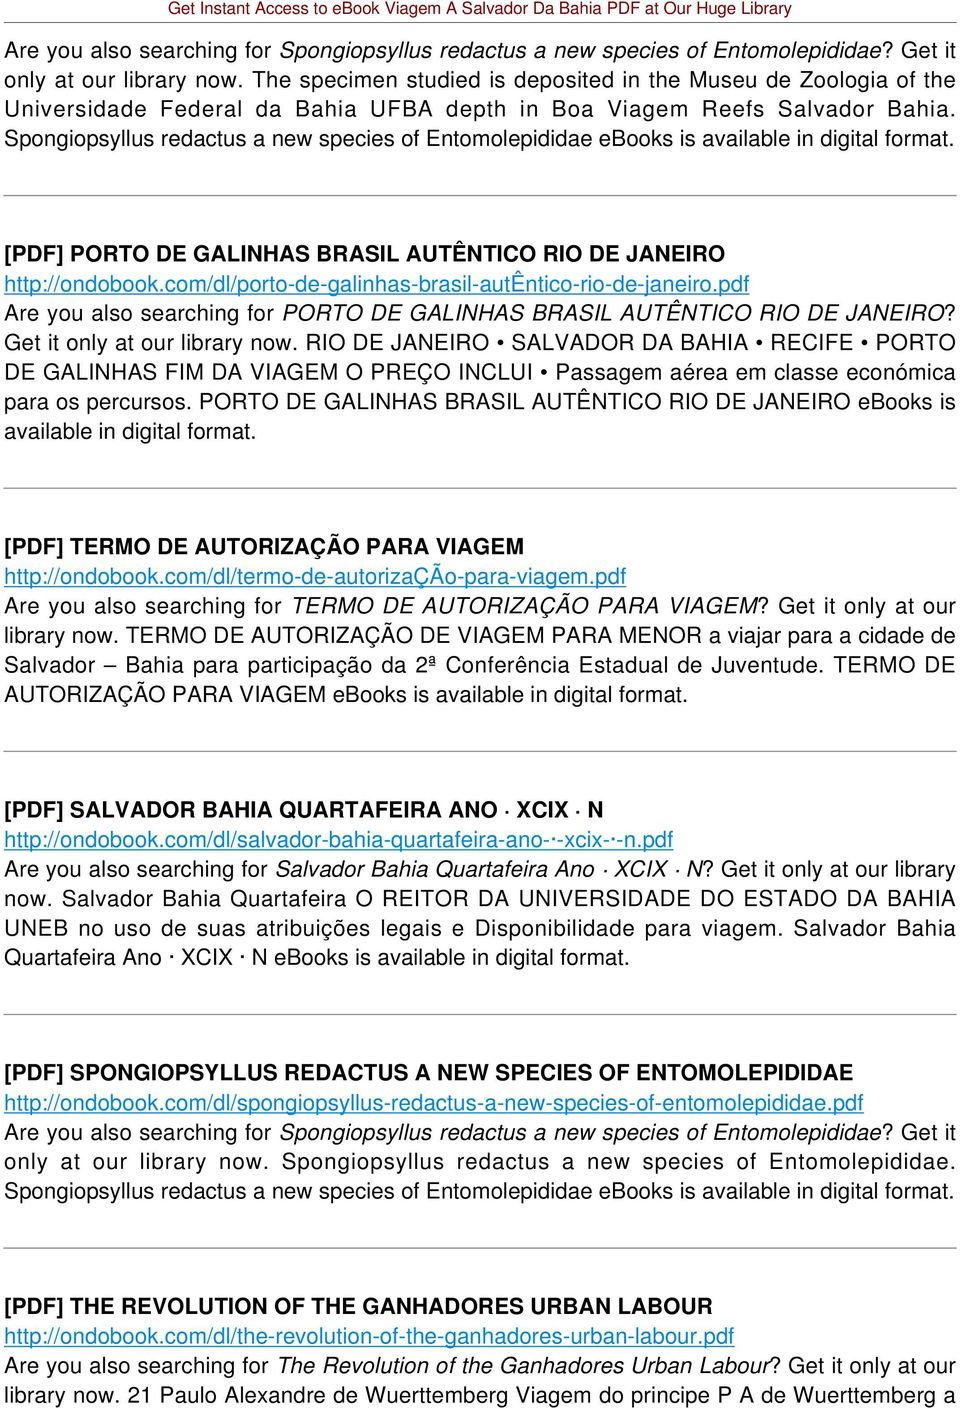 Spongiopsyllus redactus a new species of Entomolepididae ebooks is [PDF] PORTO DE GALINHAS BRASIL AUTÊNTICO RIO DE JANEIRO http://ondobook.com/dl/porto-de-galinhas-brasil-autêntico-rio-de-janeiro.